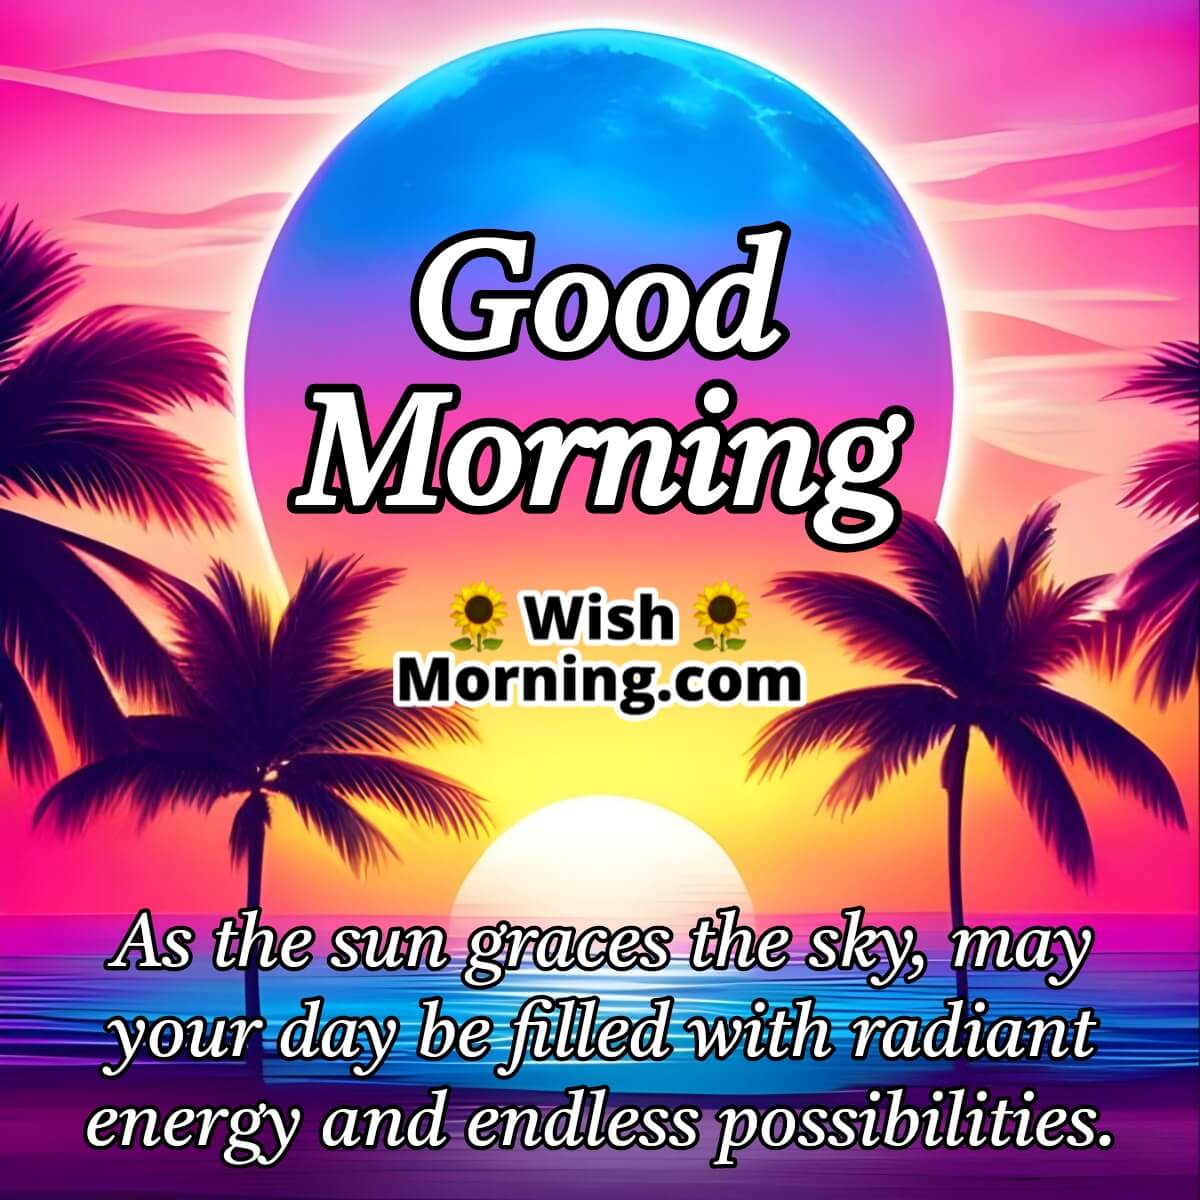 Good Morning Wishes On Sunrise